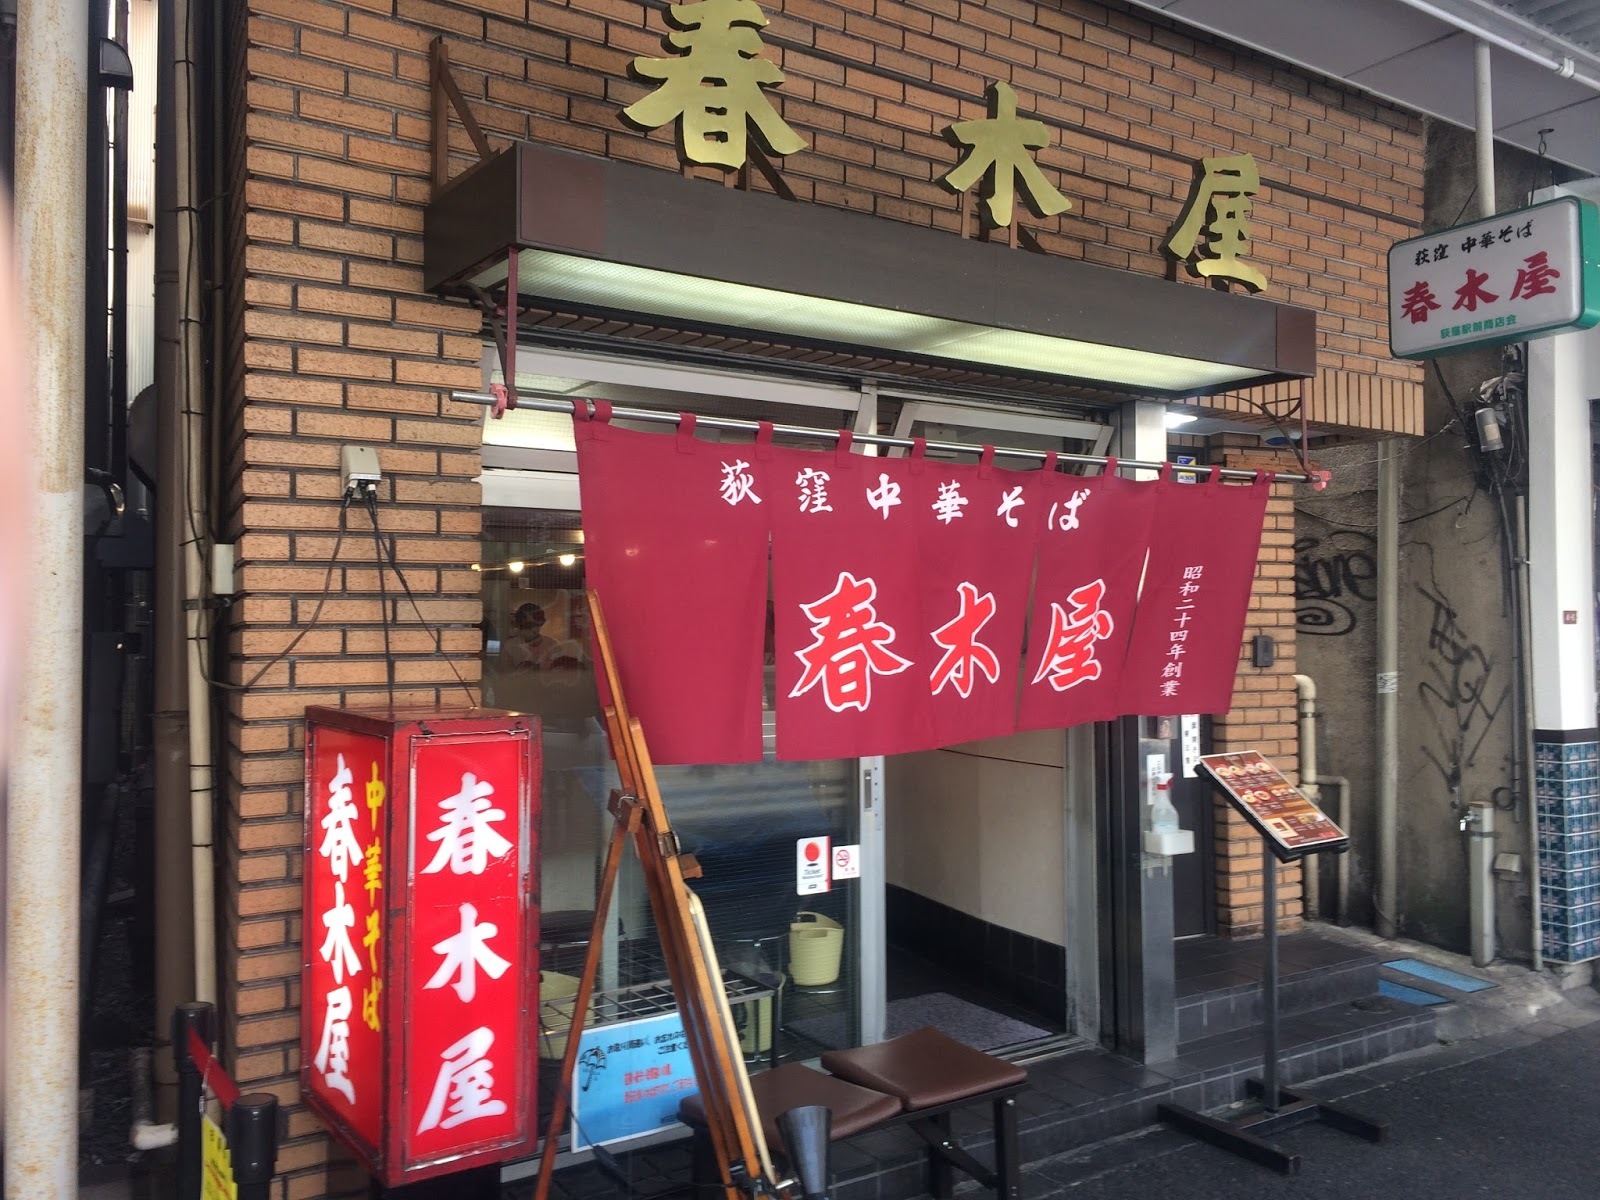 東京の荻窪にある春木屋のお店